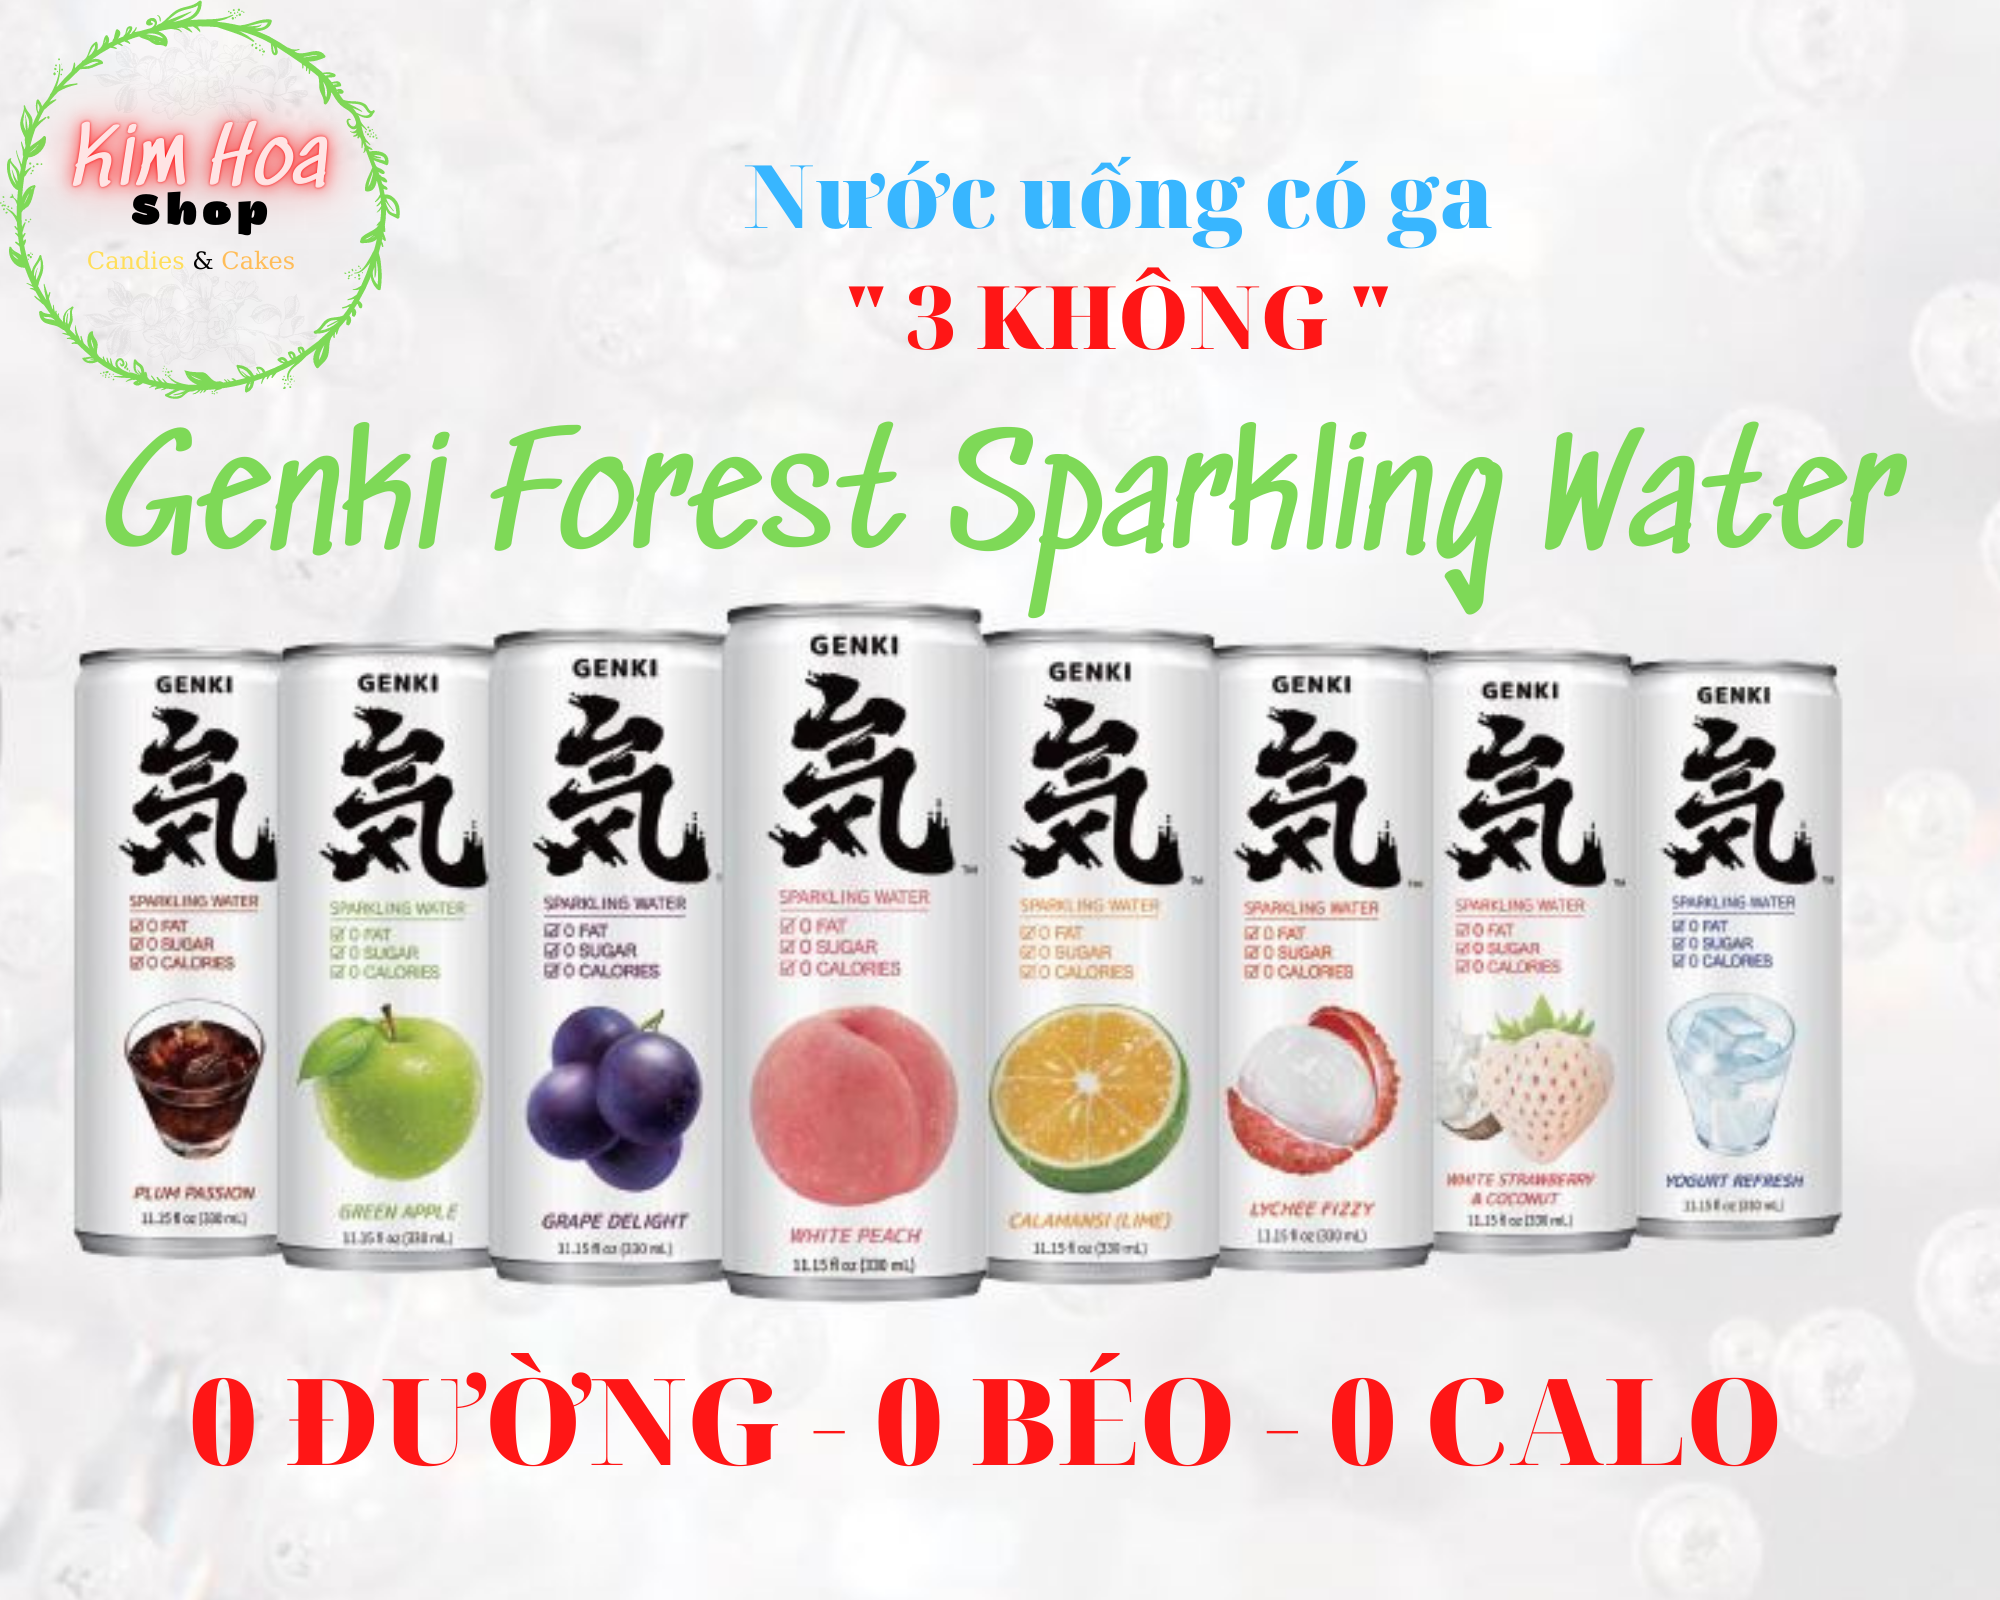 Nước giả khát có ga Genki Forest Sparkling Water 3 không 0 ĐƯỜNG 0 CHẤT